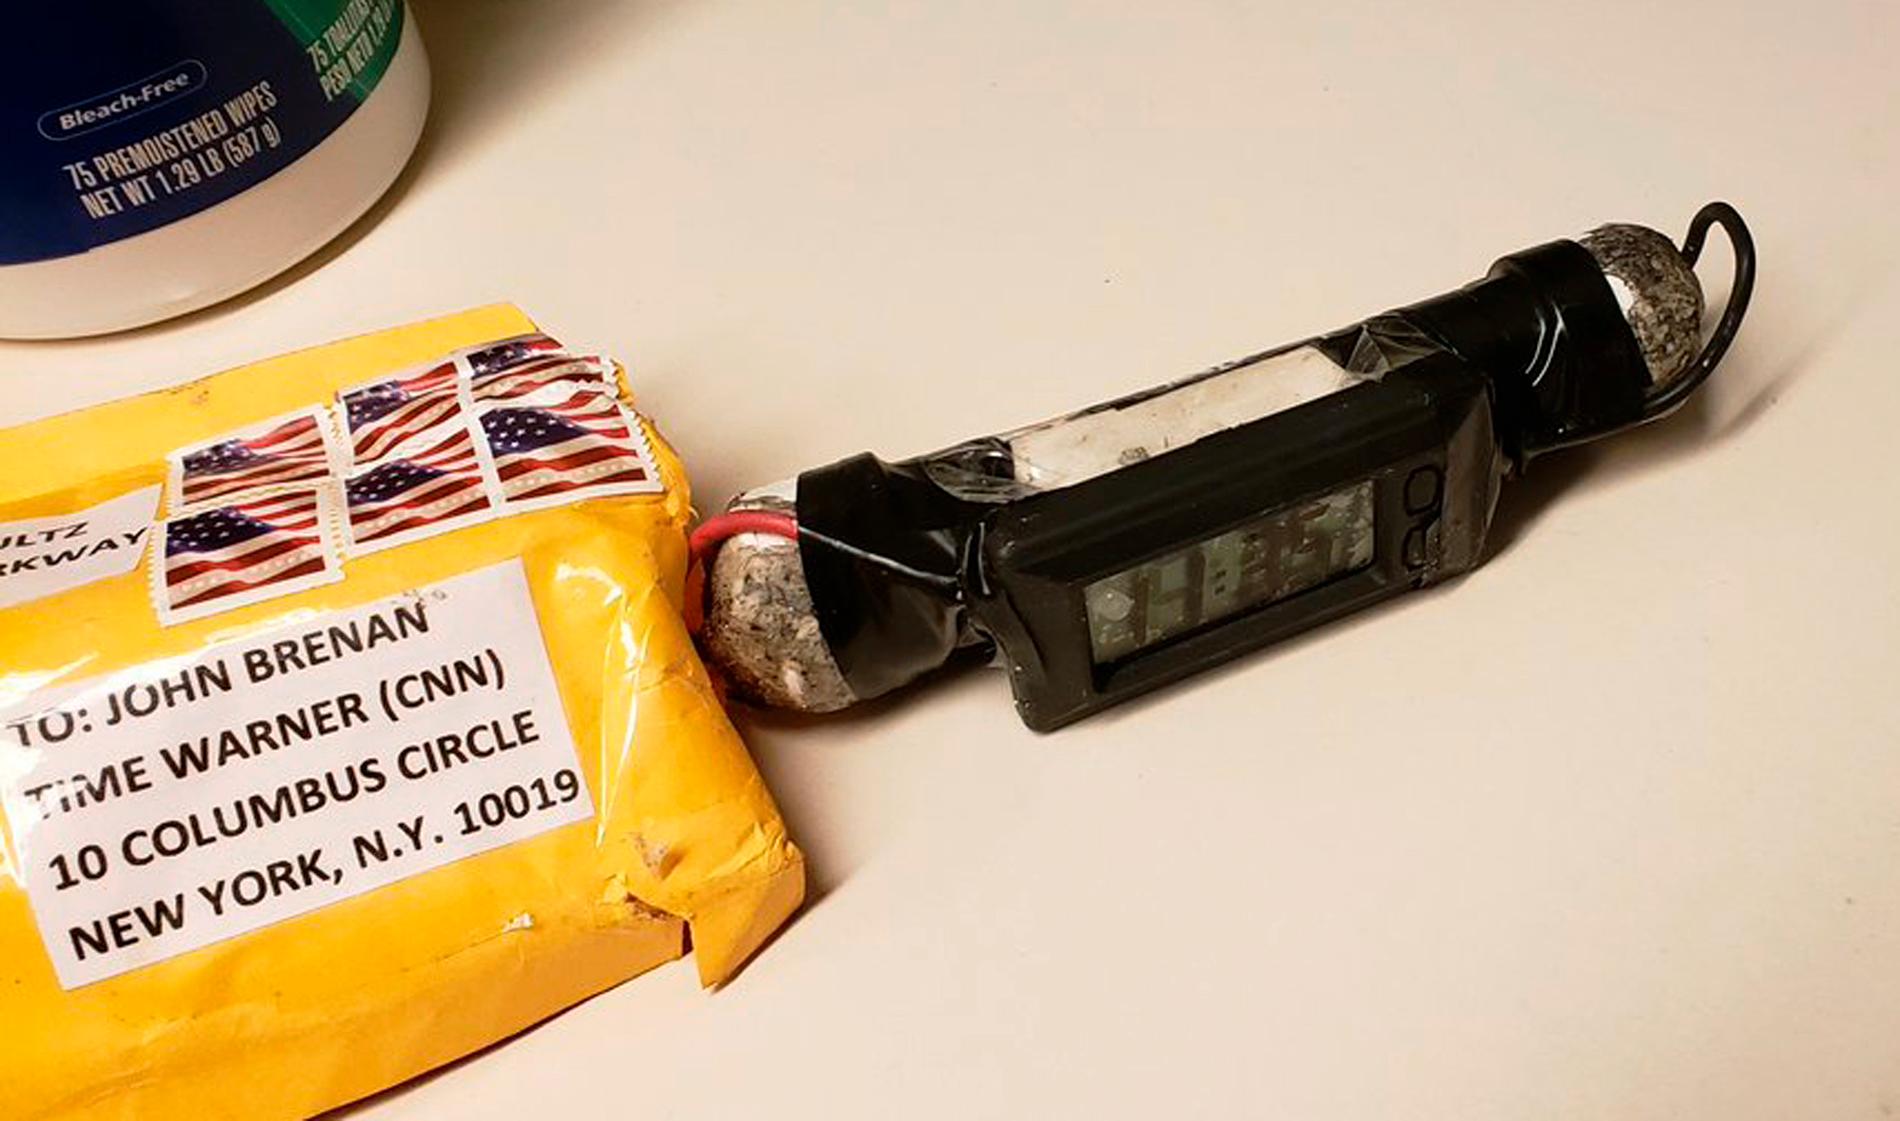 En av de misstänkta brevbomberna var adresserad till den tidigare CIA-chefen John Brennan. Arkivbild.